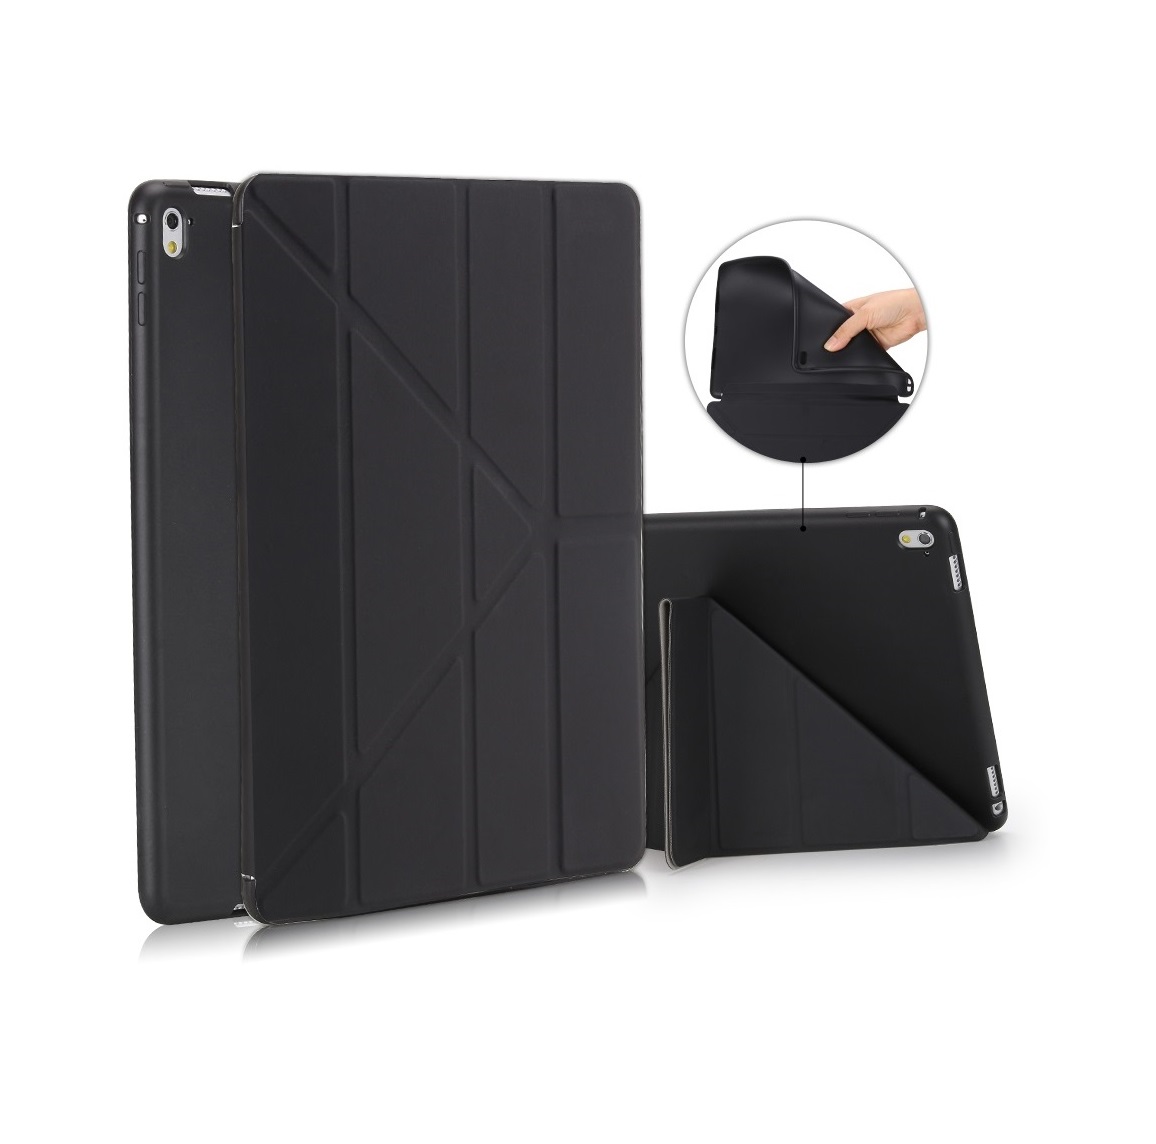 Чехол-подставка BoraSCO для Apple iPad 2/3/4 (Черный) вращающийся на 360 градусов чехол для apple ipad 8th 7th 6th 5th air 1 2 3 4 mini 1 2 3 4 5 pro 11 чехол подставка искусственная кожа чехол для планшета